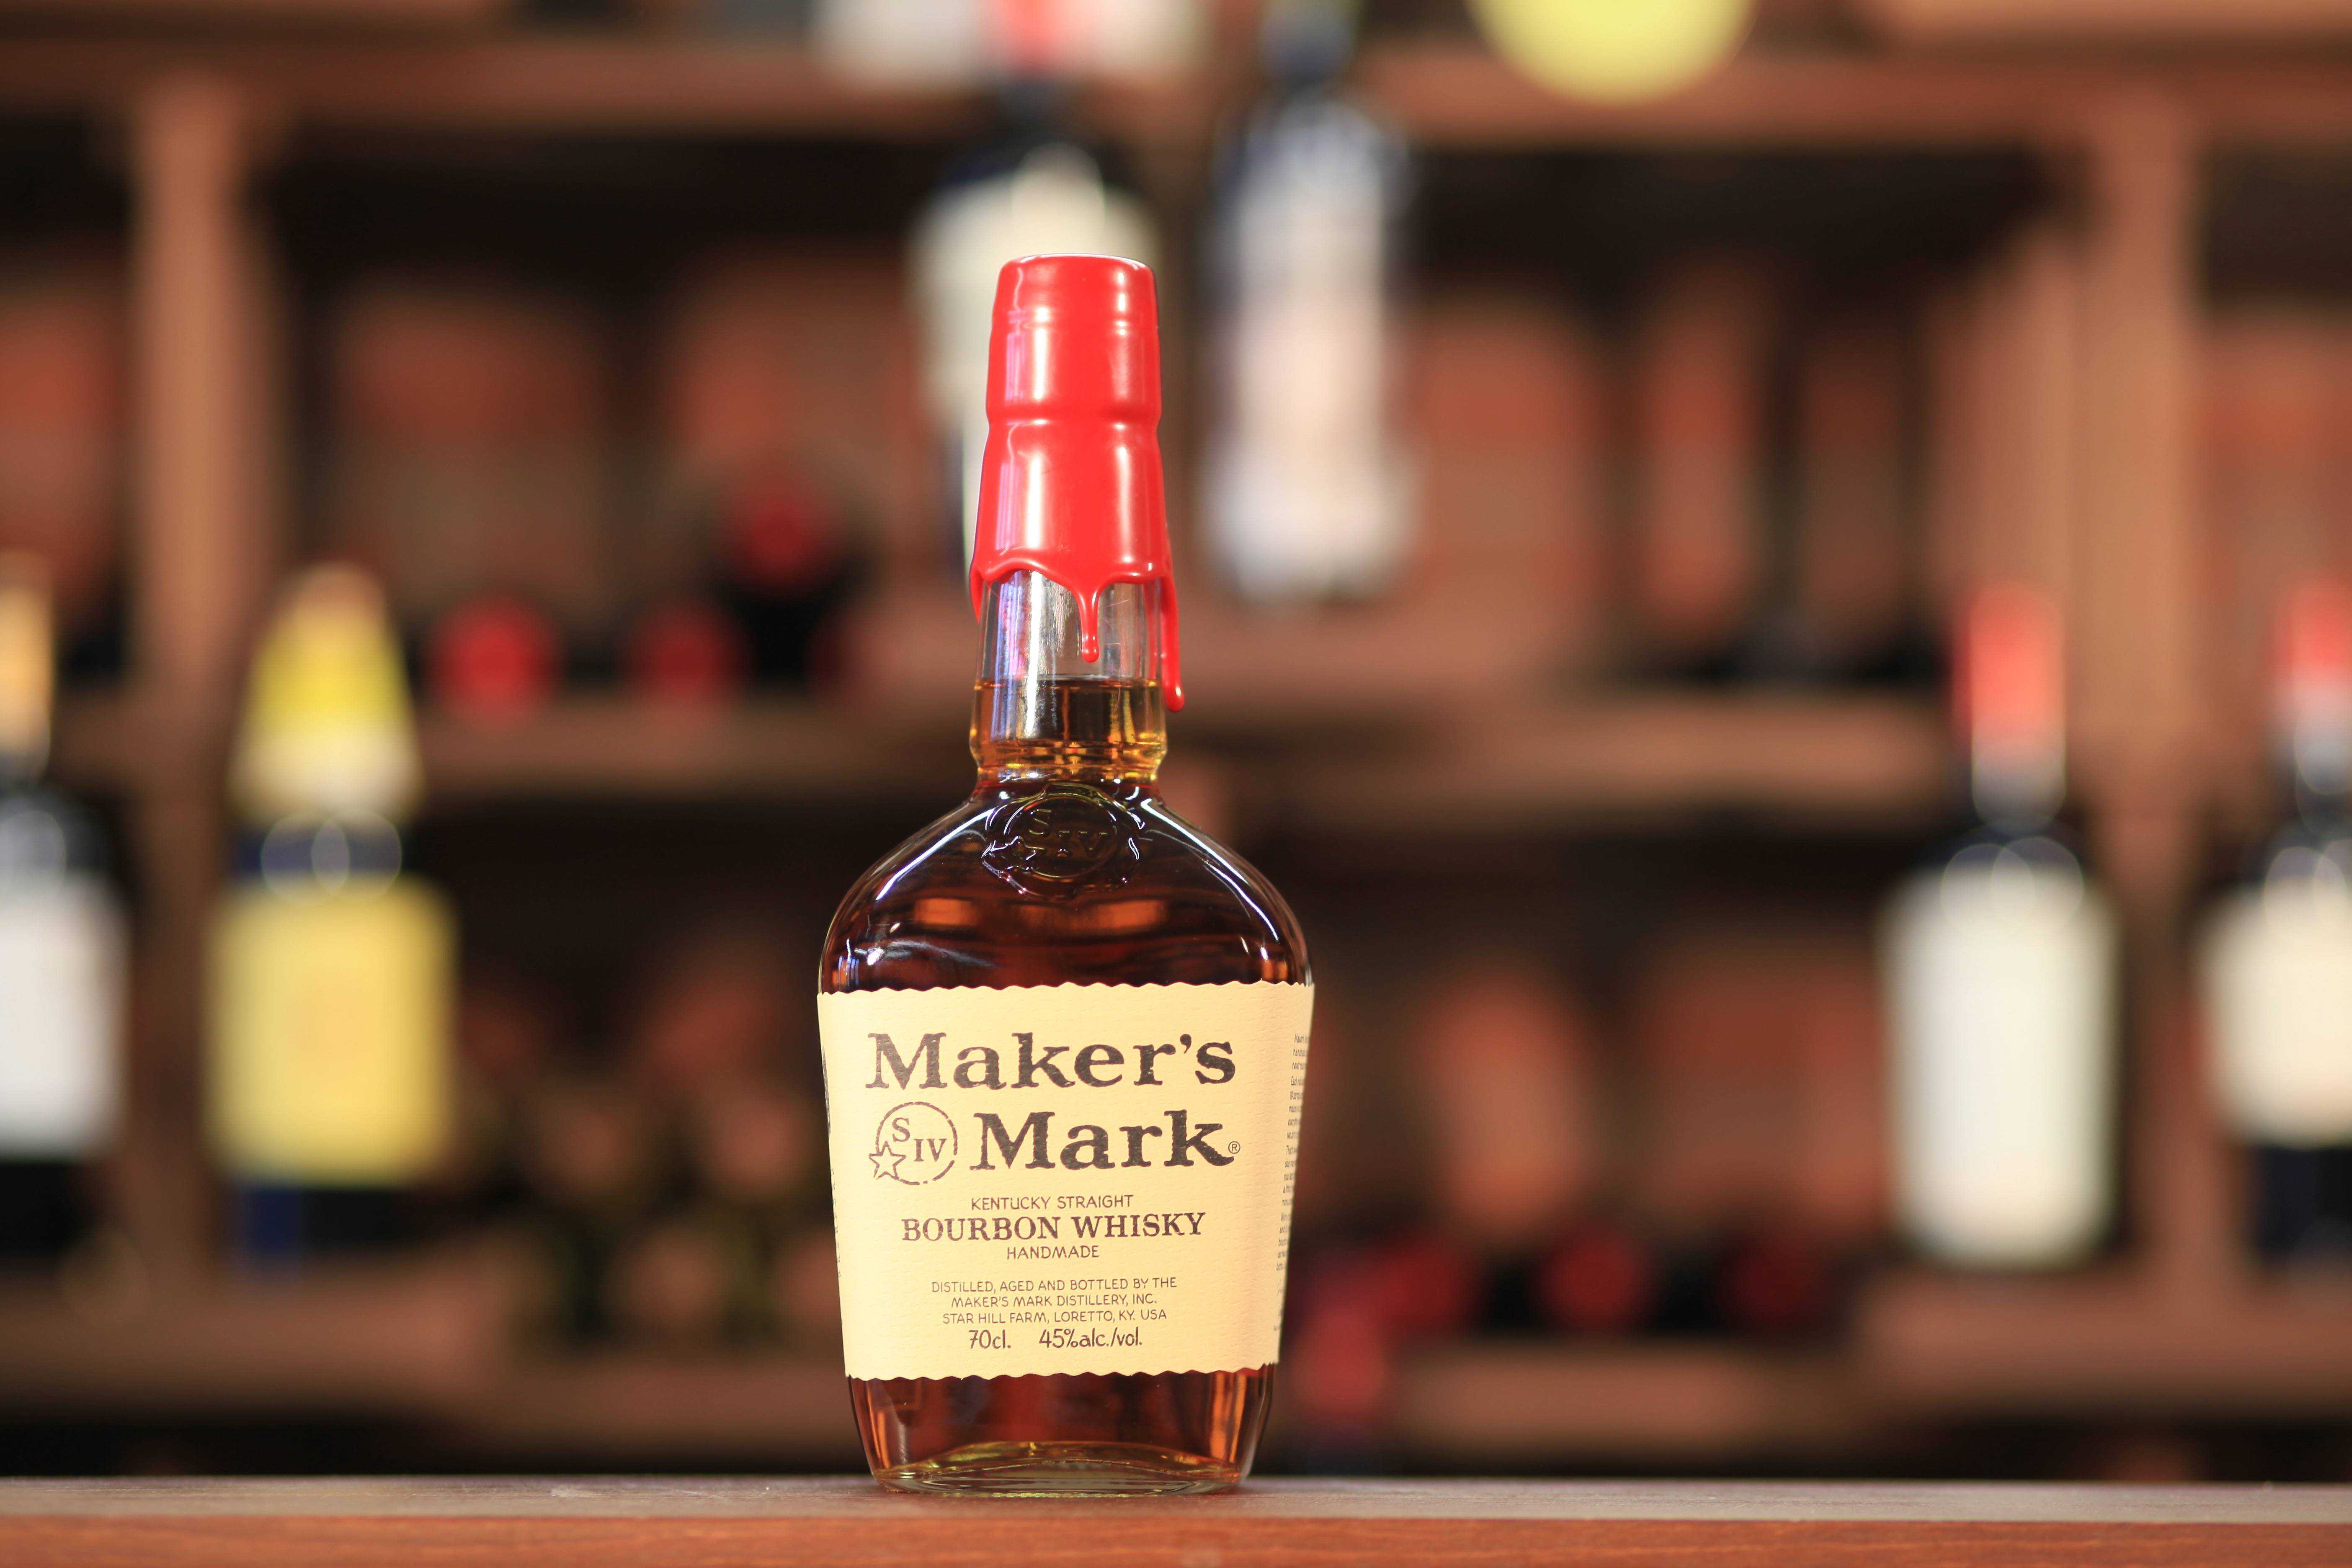 Maker’s mark vs jack daniels - the full brand battle! - whiskey watch